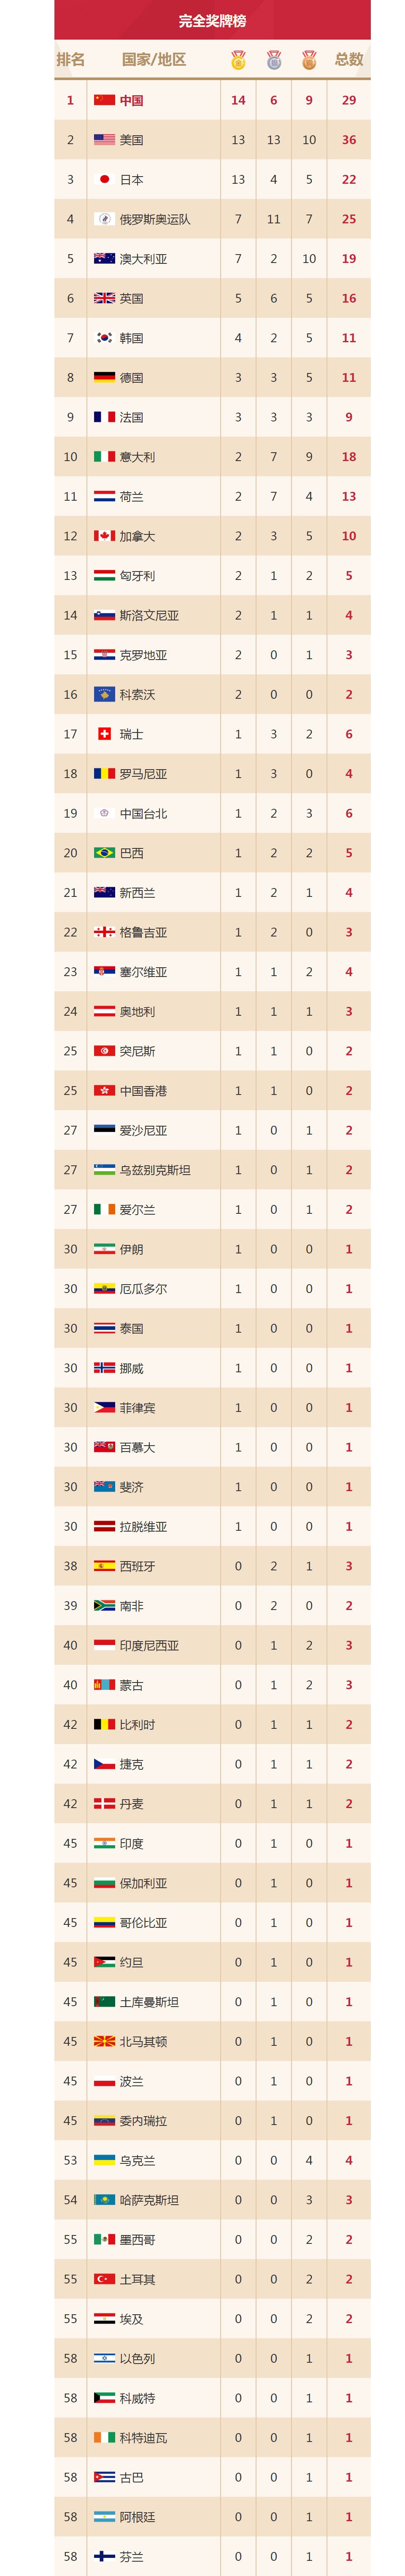 东京奥运会奖牌榜排名_东京奥运会奖牌榜排名预测